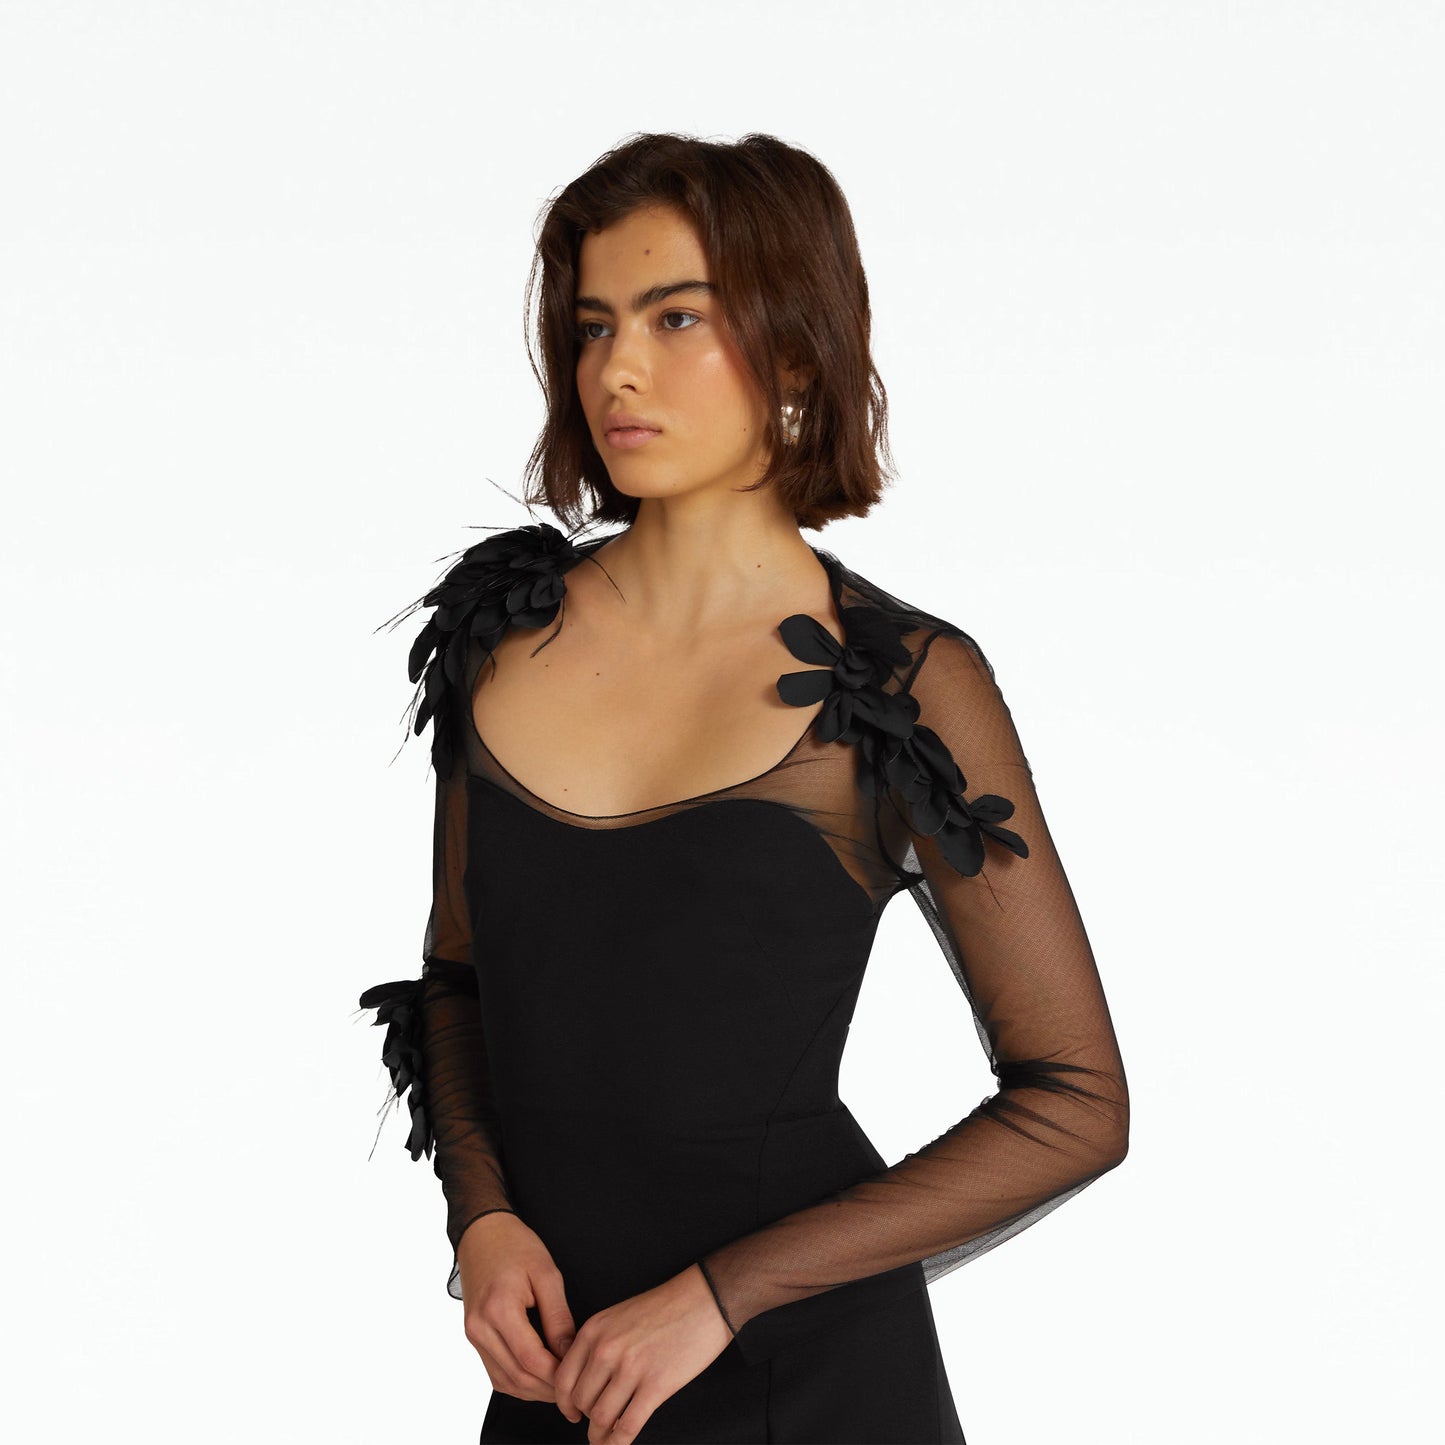 Rosel Black Long Dress